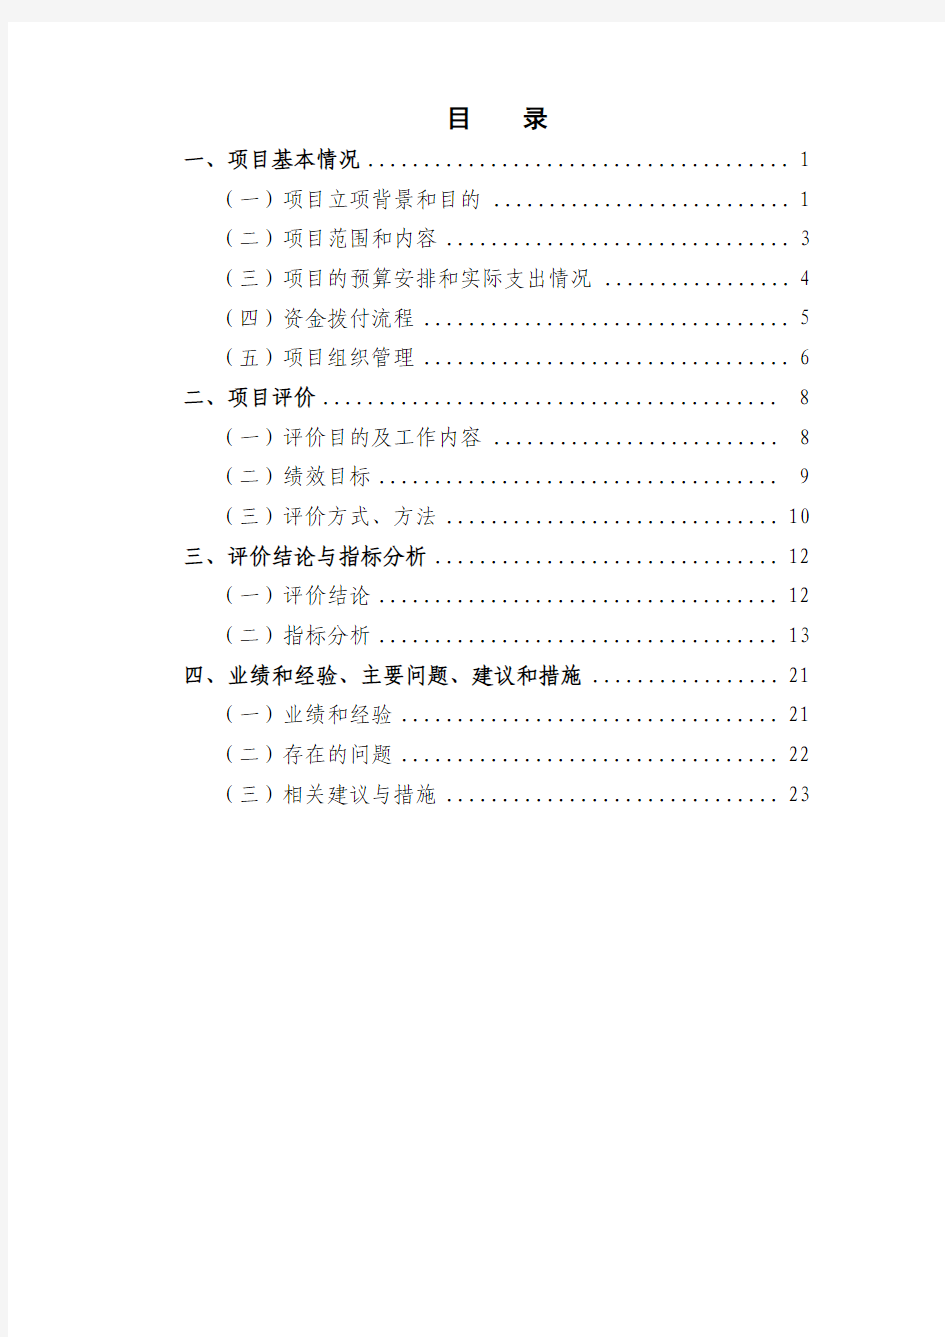 上海财政支出绩效评价报告-上海安监局